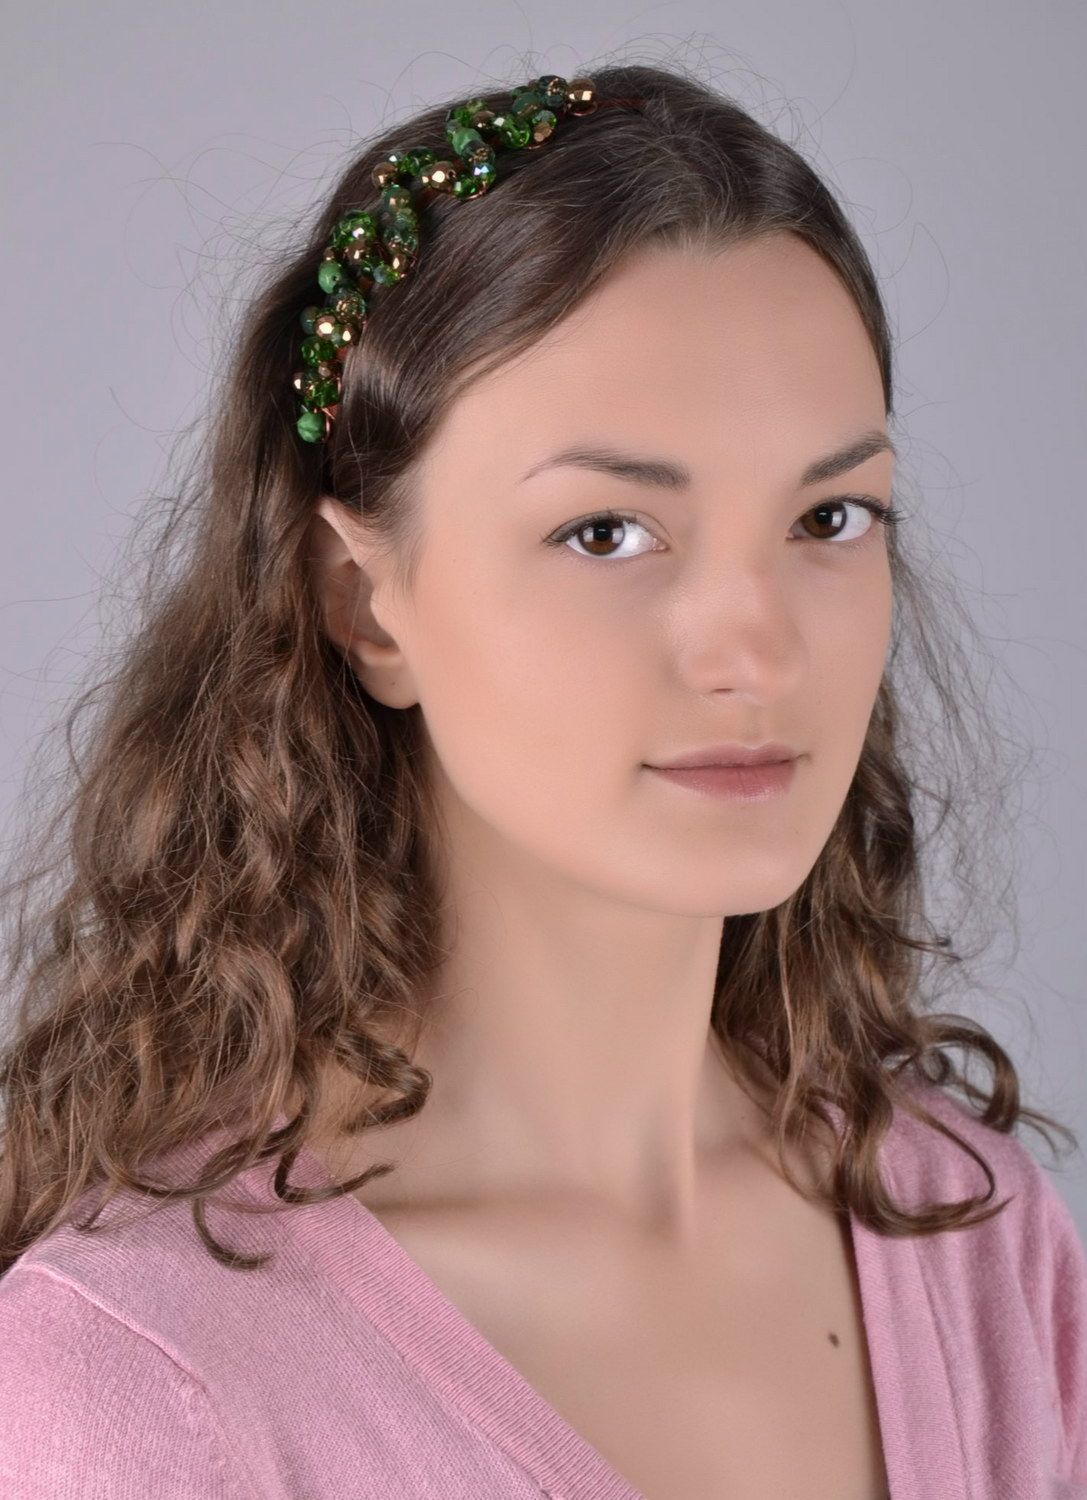 Green headband photo 1